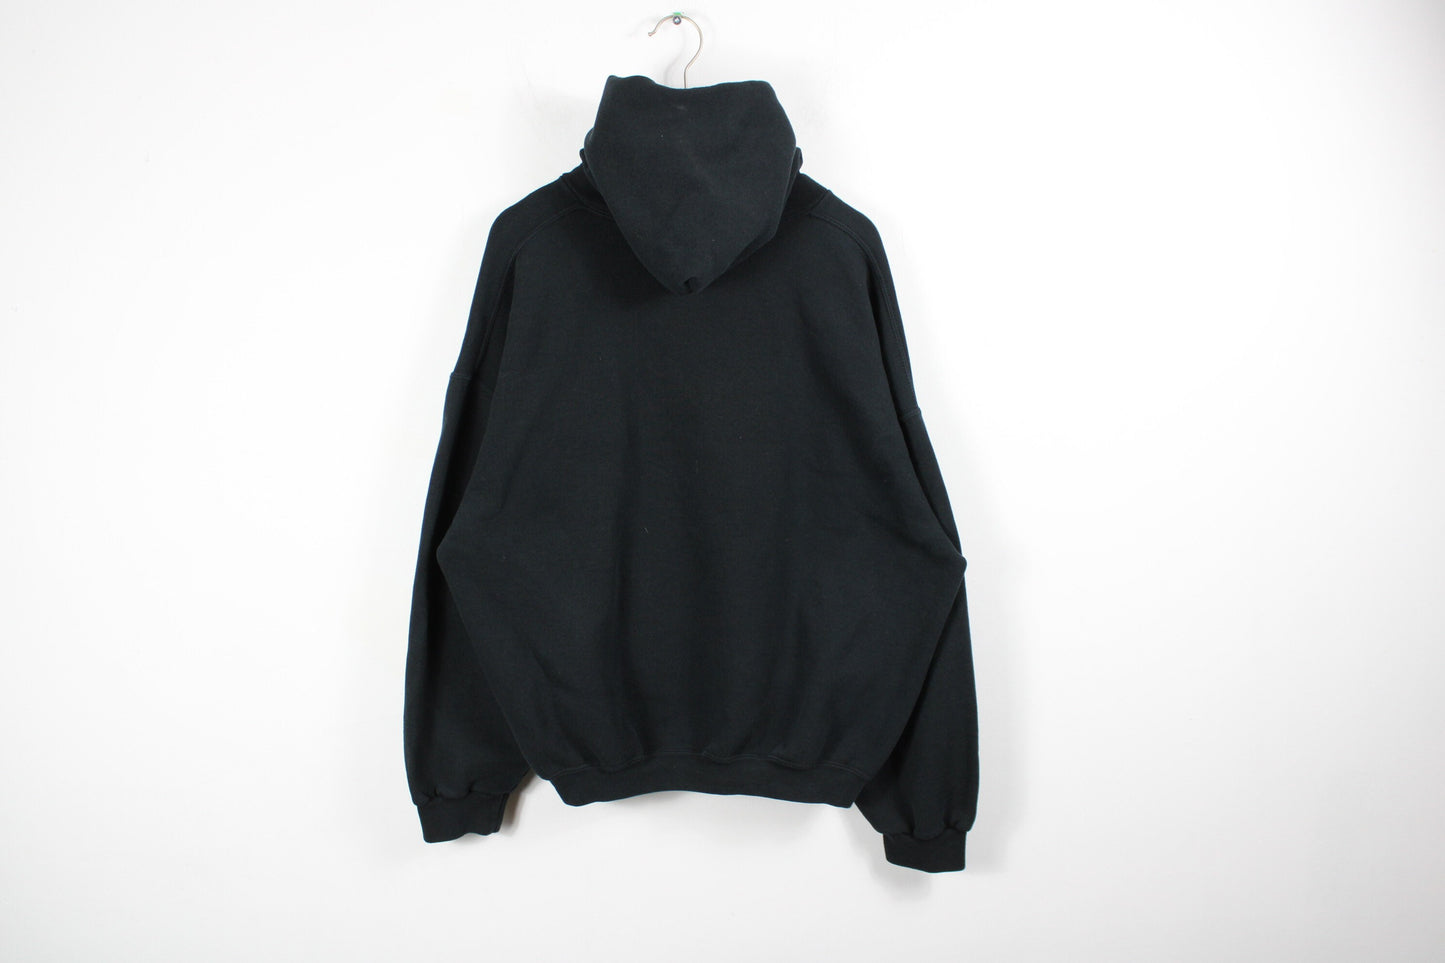 Russell Hooded Sweater / Vintage Blank Black Athletic Hoodie Sweatshirt / Pullover Promo Hoody / 90s Hip Hop Clothing / Streetwear